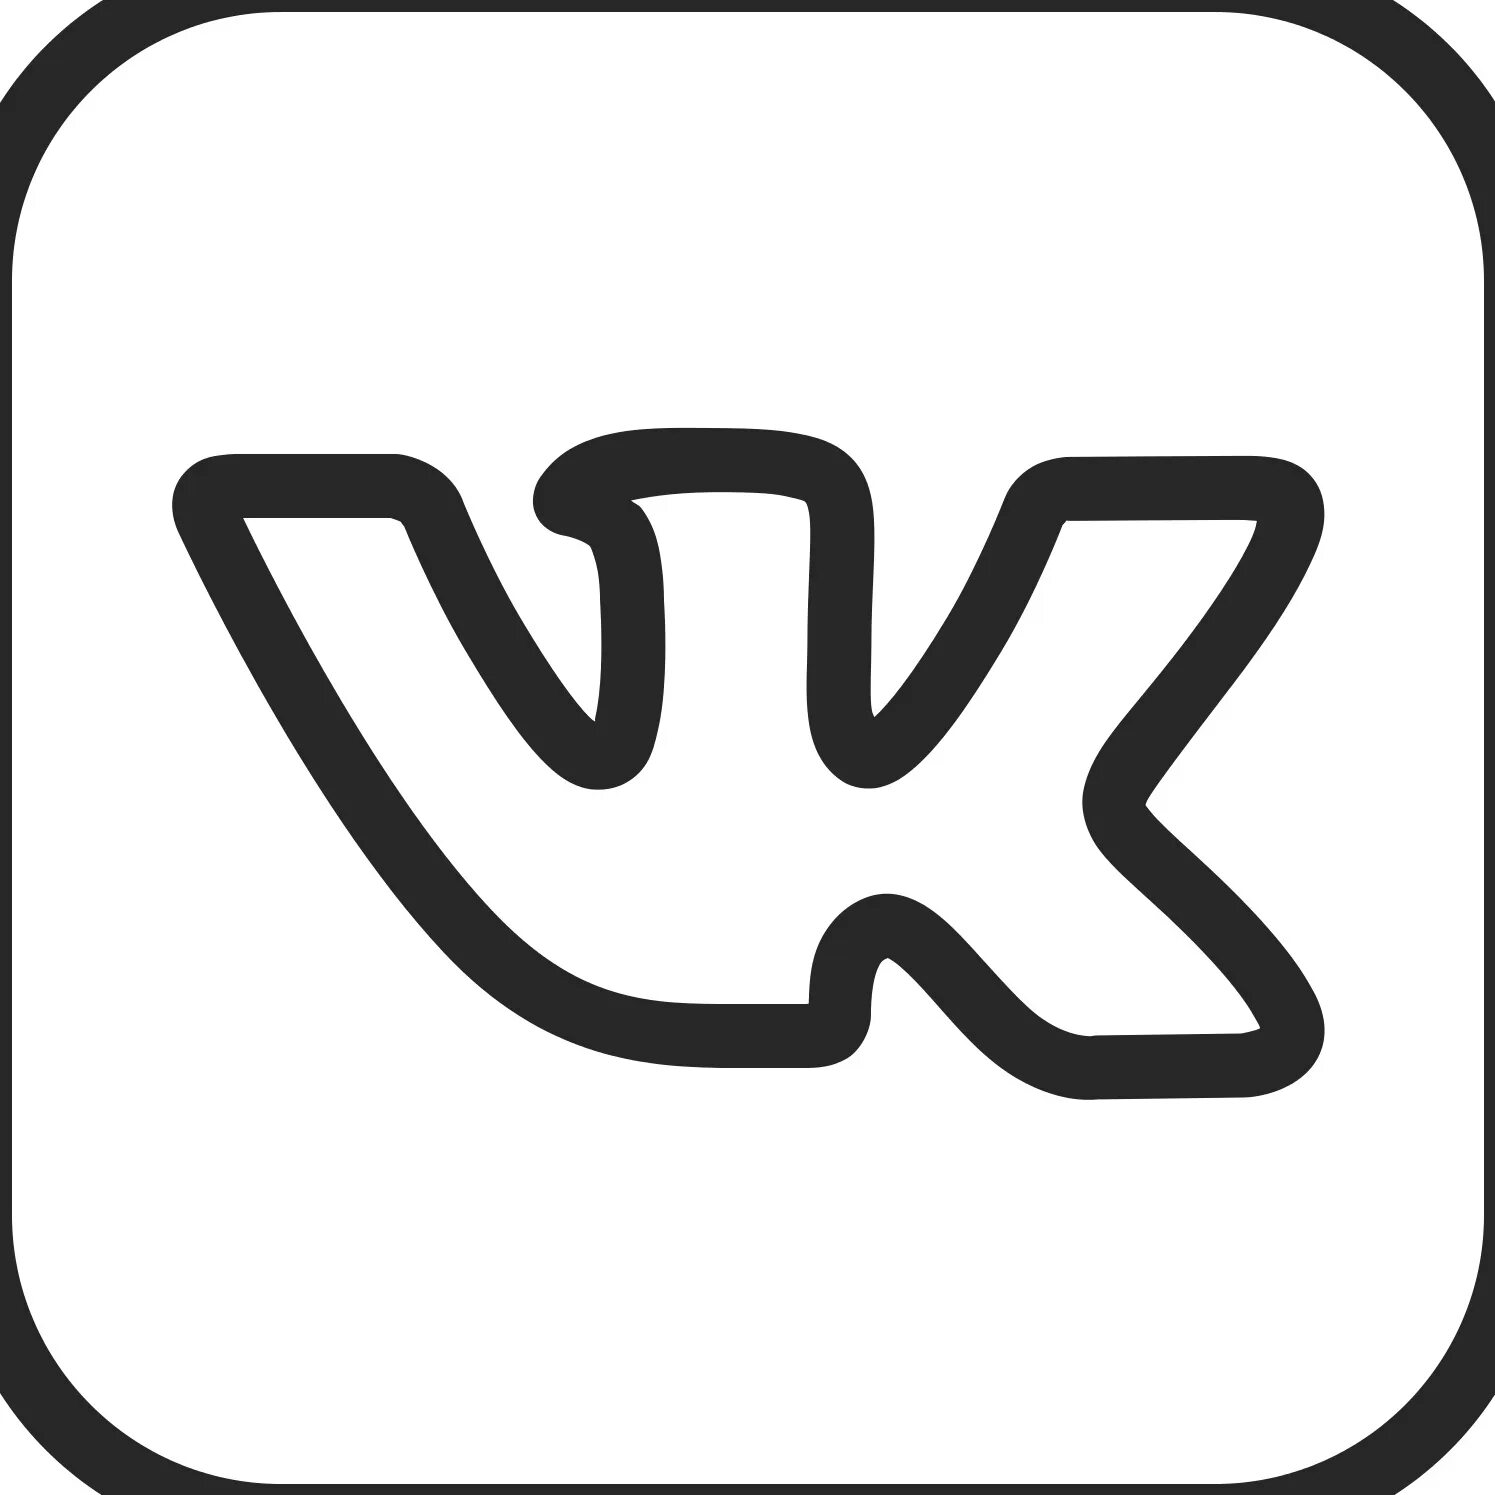 Логотип вк черный. Значок ВК. Значок Вики. OBK логотип. Значок ВК белый.